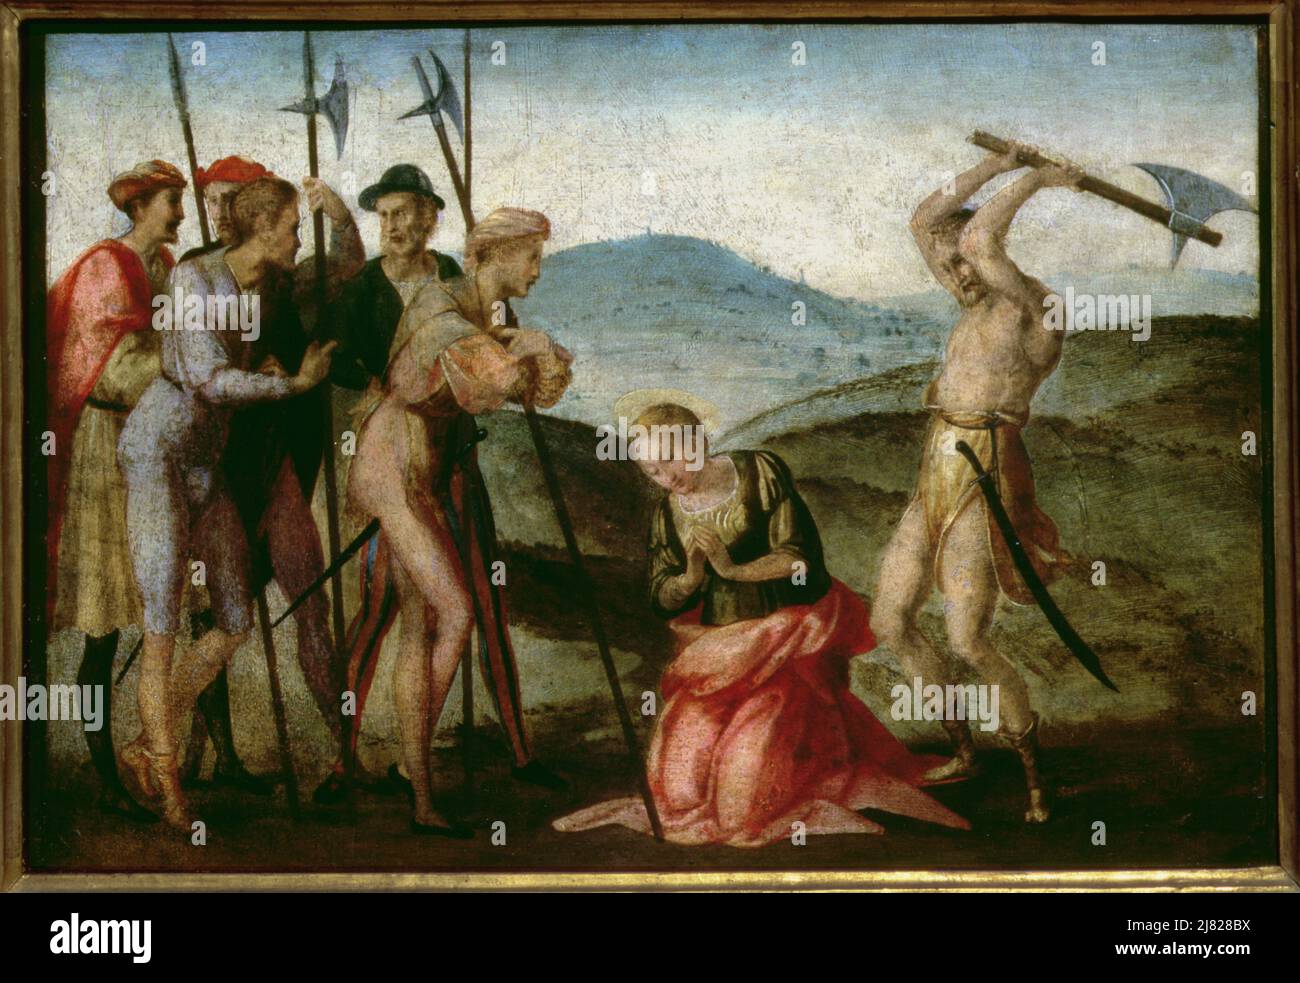 Porträt eines Ritter von Malta, möglicherweise Fra Antonio Martelli, 1607-08 (Öl auf Leinwand) von Caravaggio, Michelangelo Merisi da (1571-1610); 118.5x95,5 cm; Palazzo Pitti, Florenz, Italien; Italienisch, nicht urheberrechtlich geschützt. Stockfoto